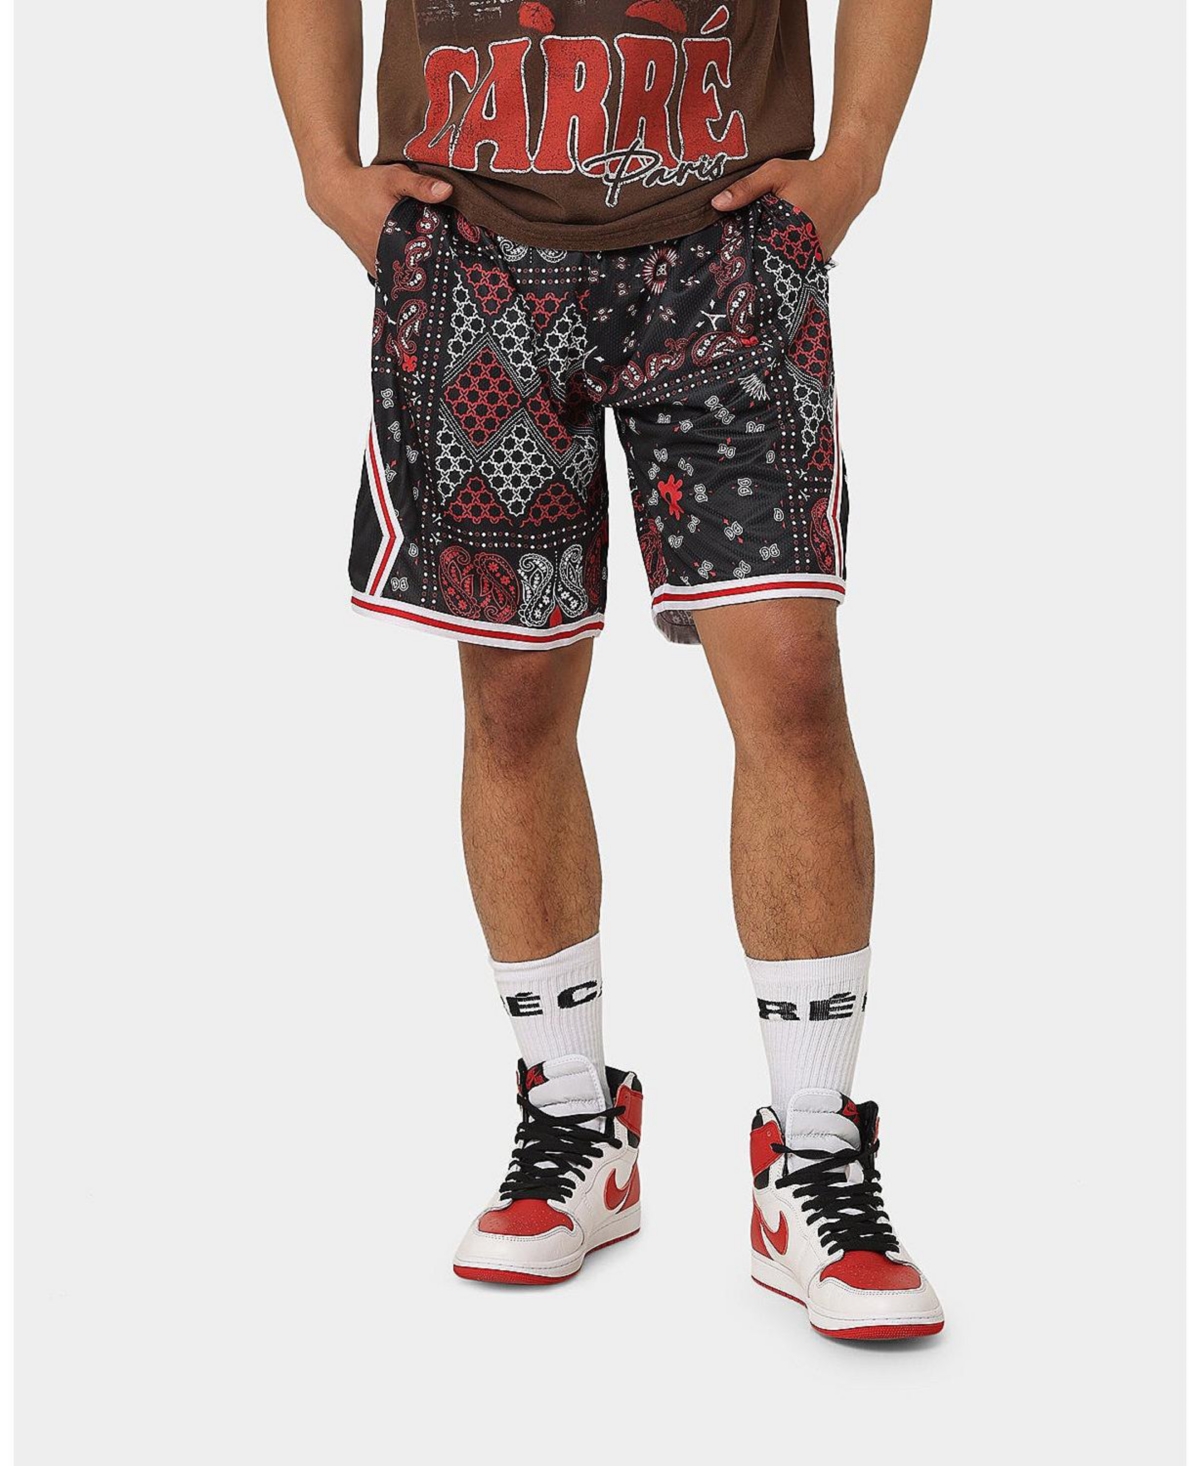 Mens Bandana Ultra Basketball Shorts - Black/red